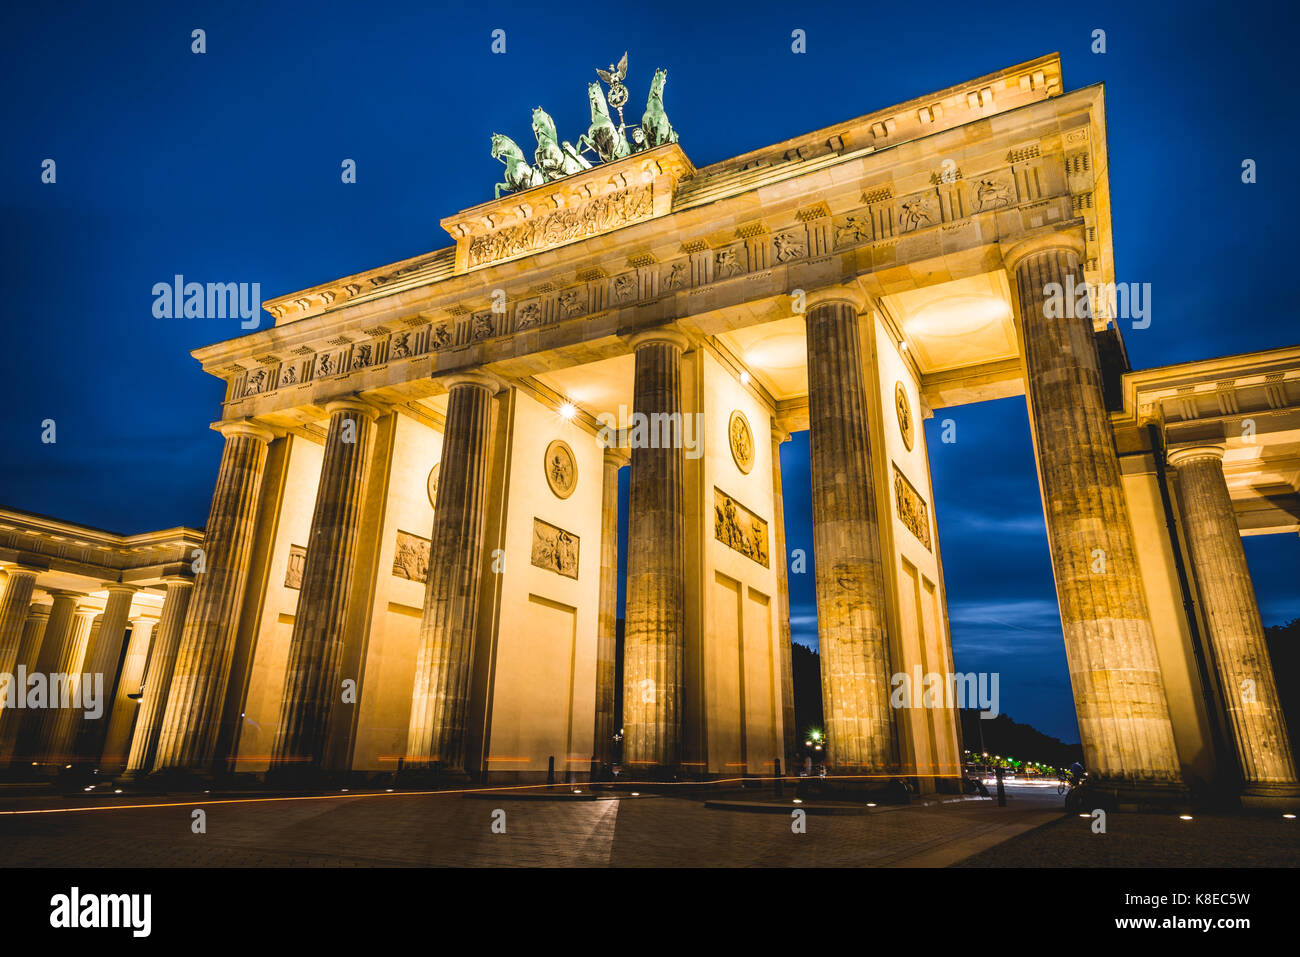 La porte de Brandebourg à la tombée de la nuit, illuminé, Pariser Platz, Berlin-mitte, Berlin, Berlin, Allemagne Banque D'Images